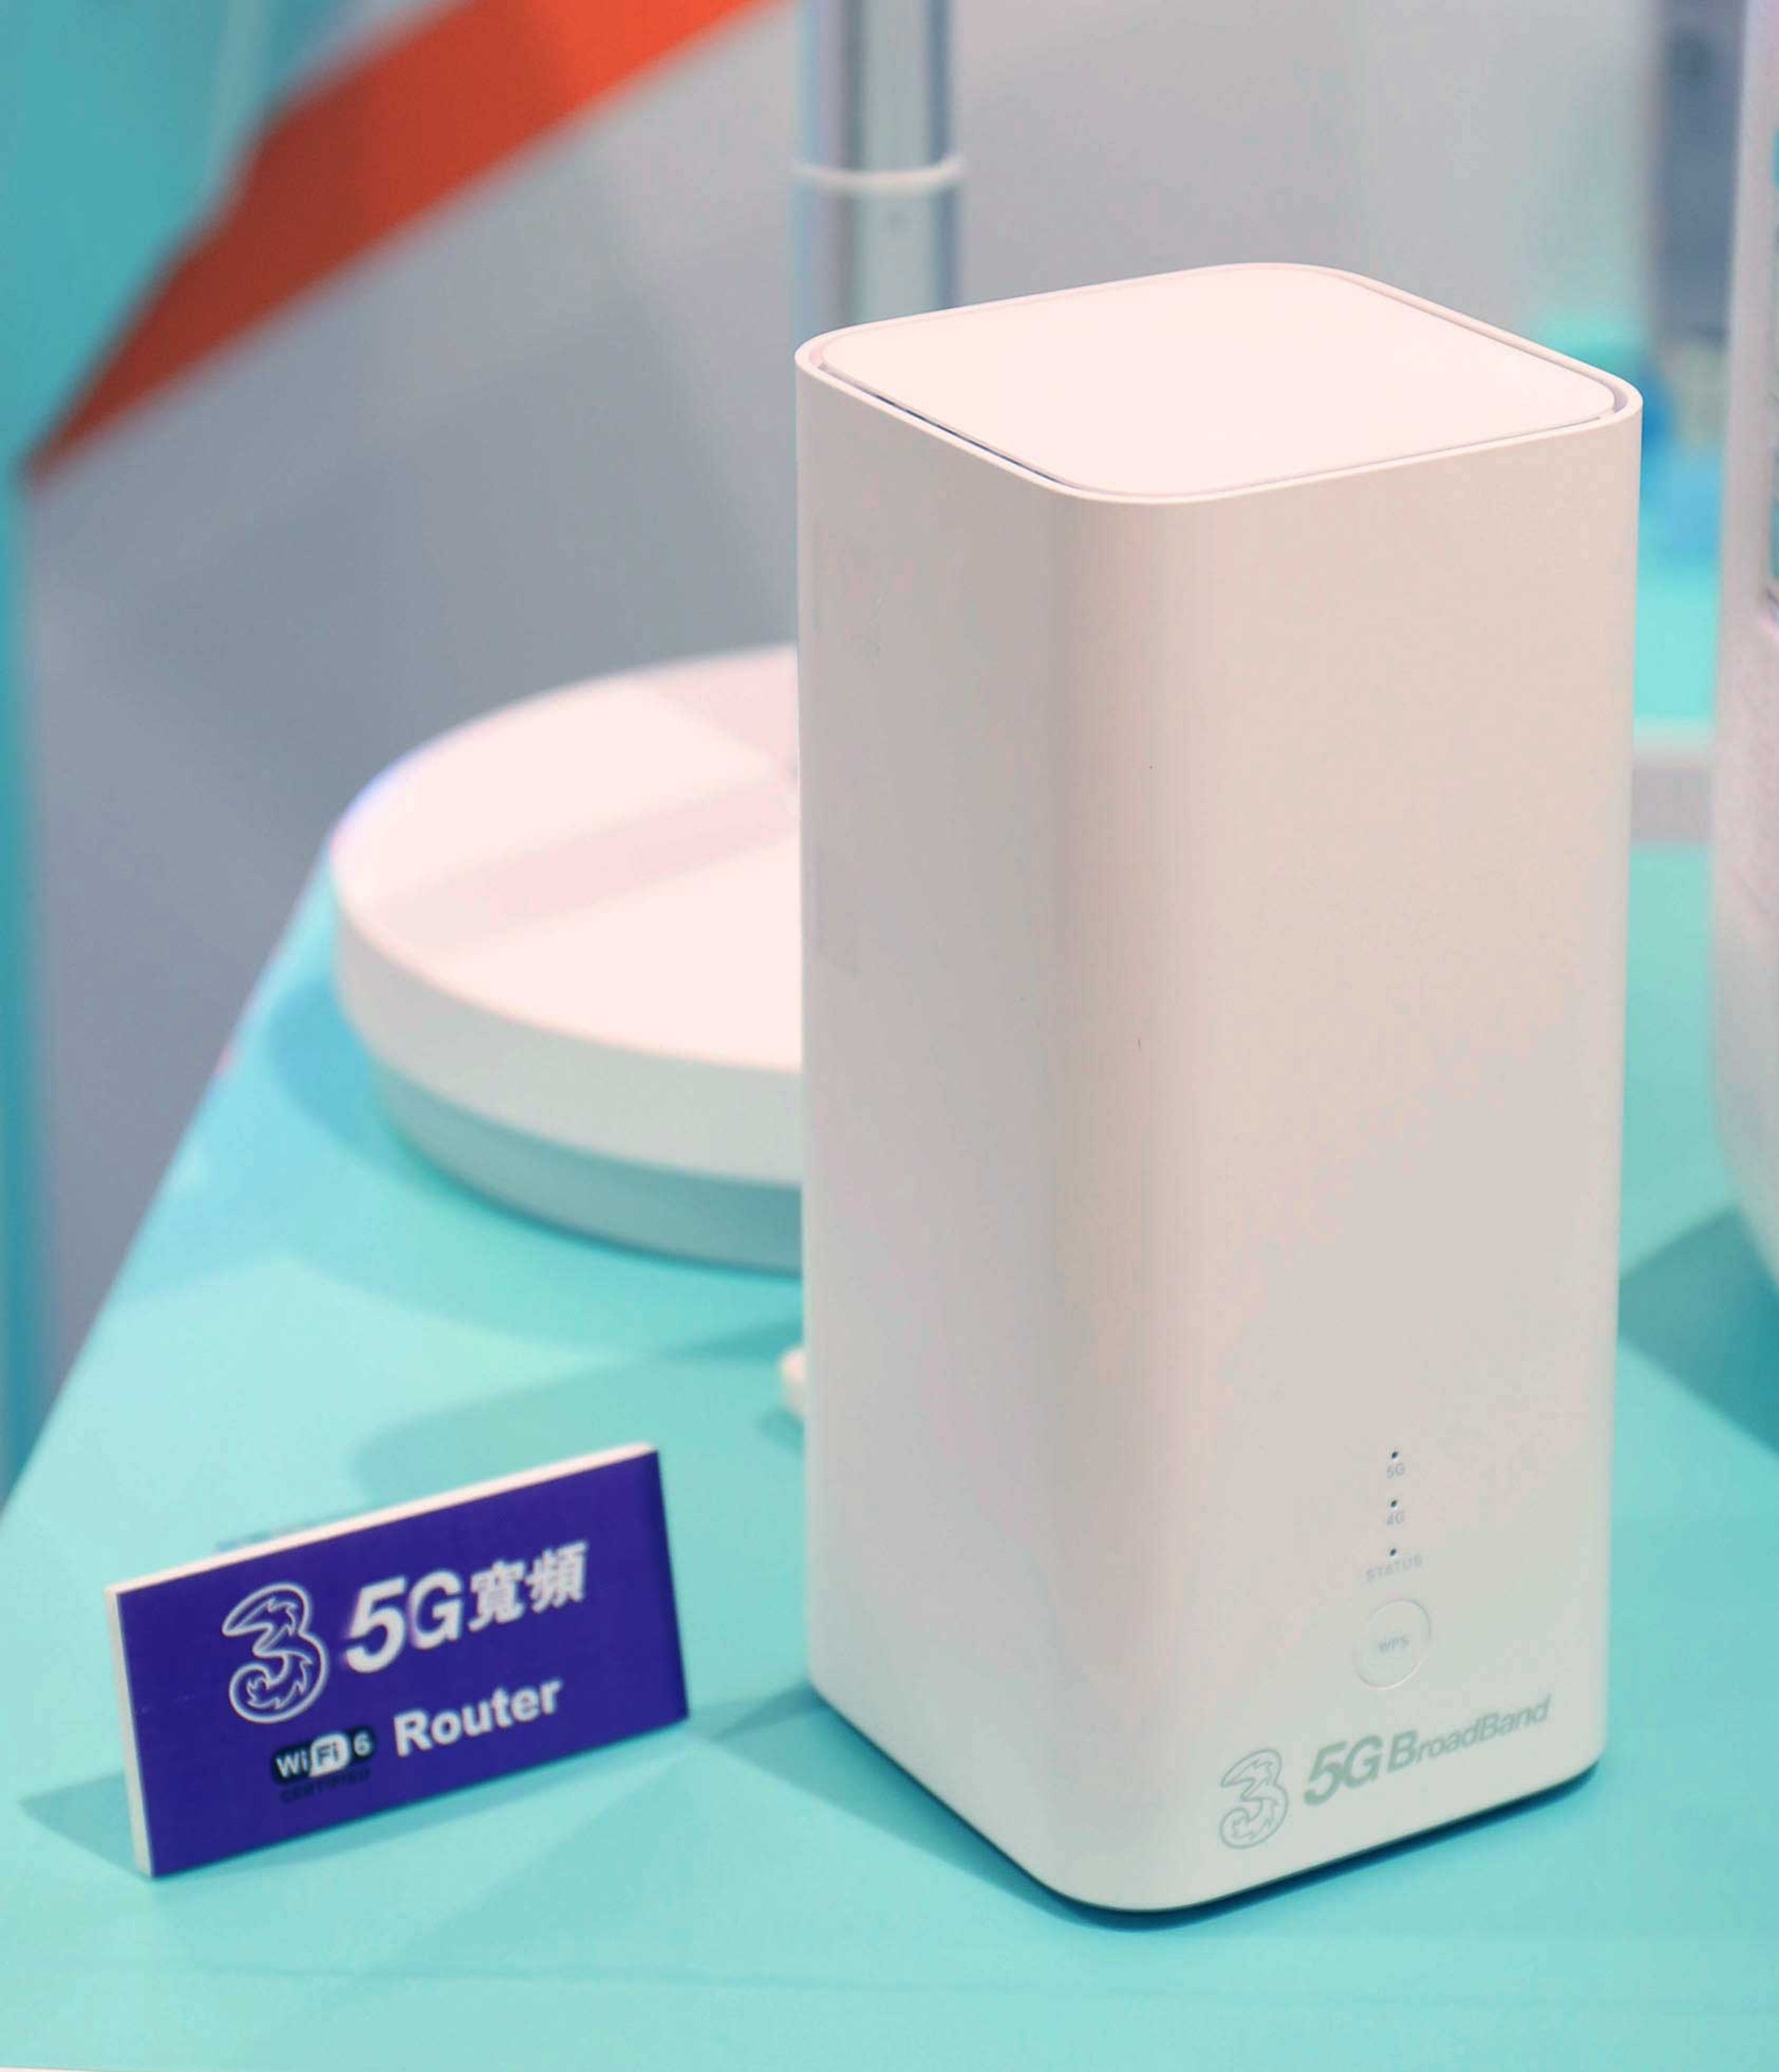 今次 3 香港限時優惠的最大吸引之處，是 Wi-Fi Router 基本上是贈送予客戶，其現價接近＄3000，即使完約後，插上其他 5G SIM 都一樣用得到（圖 3 香港）